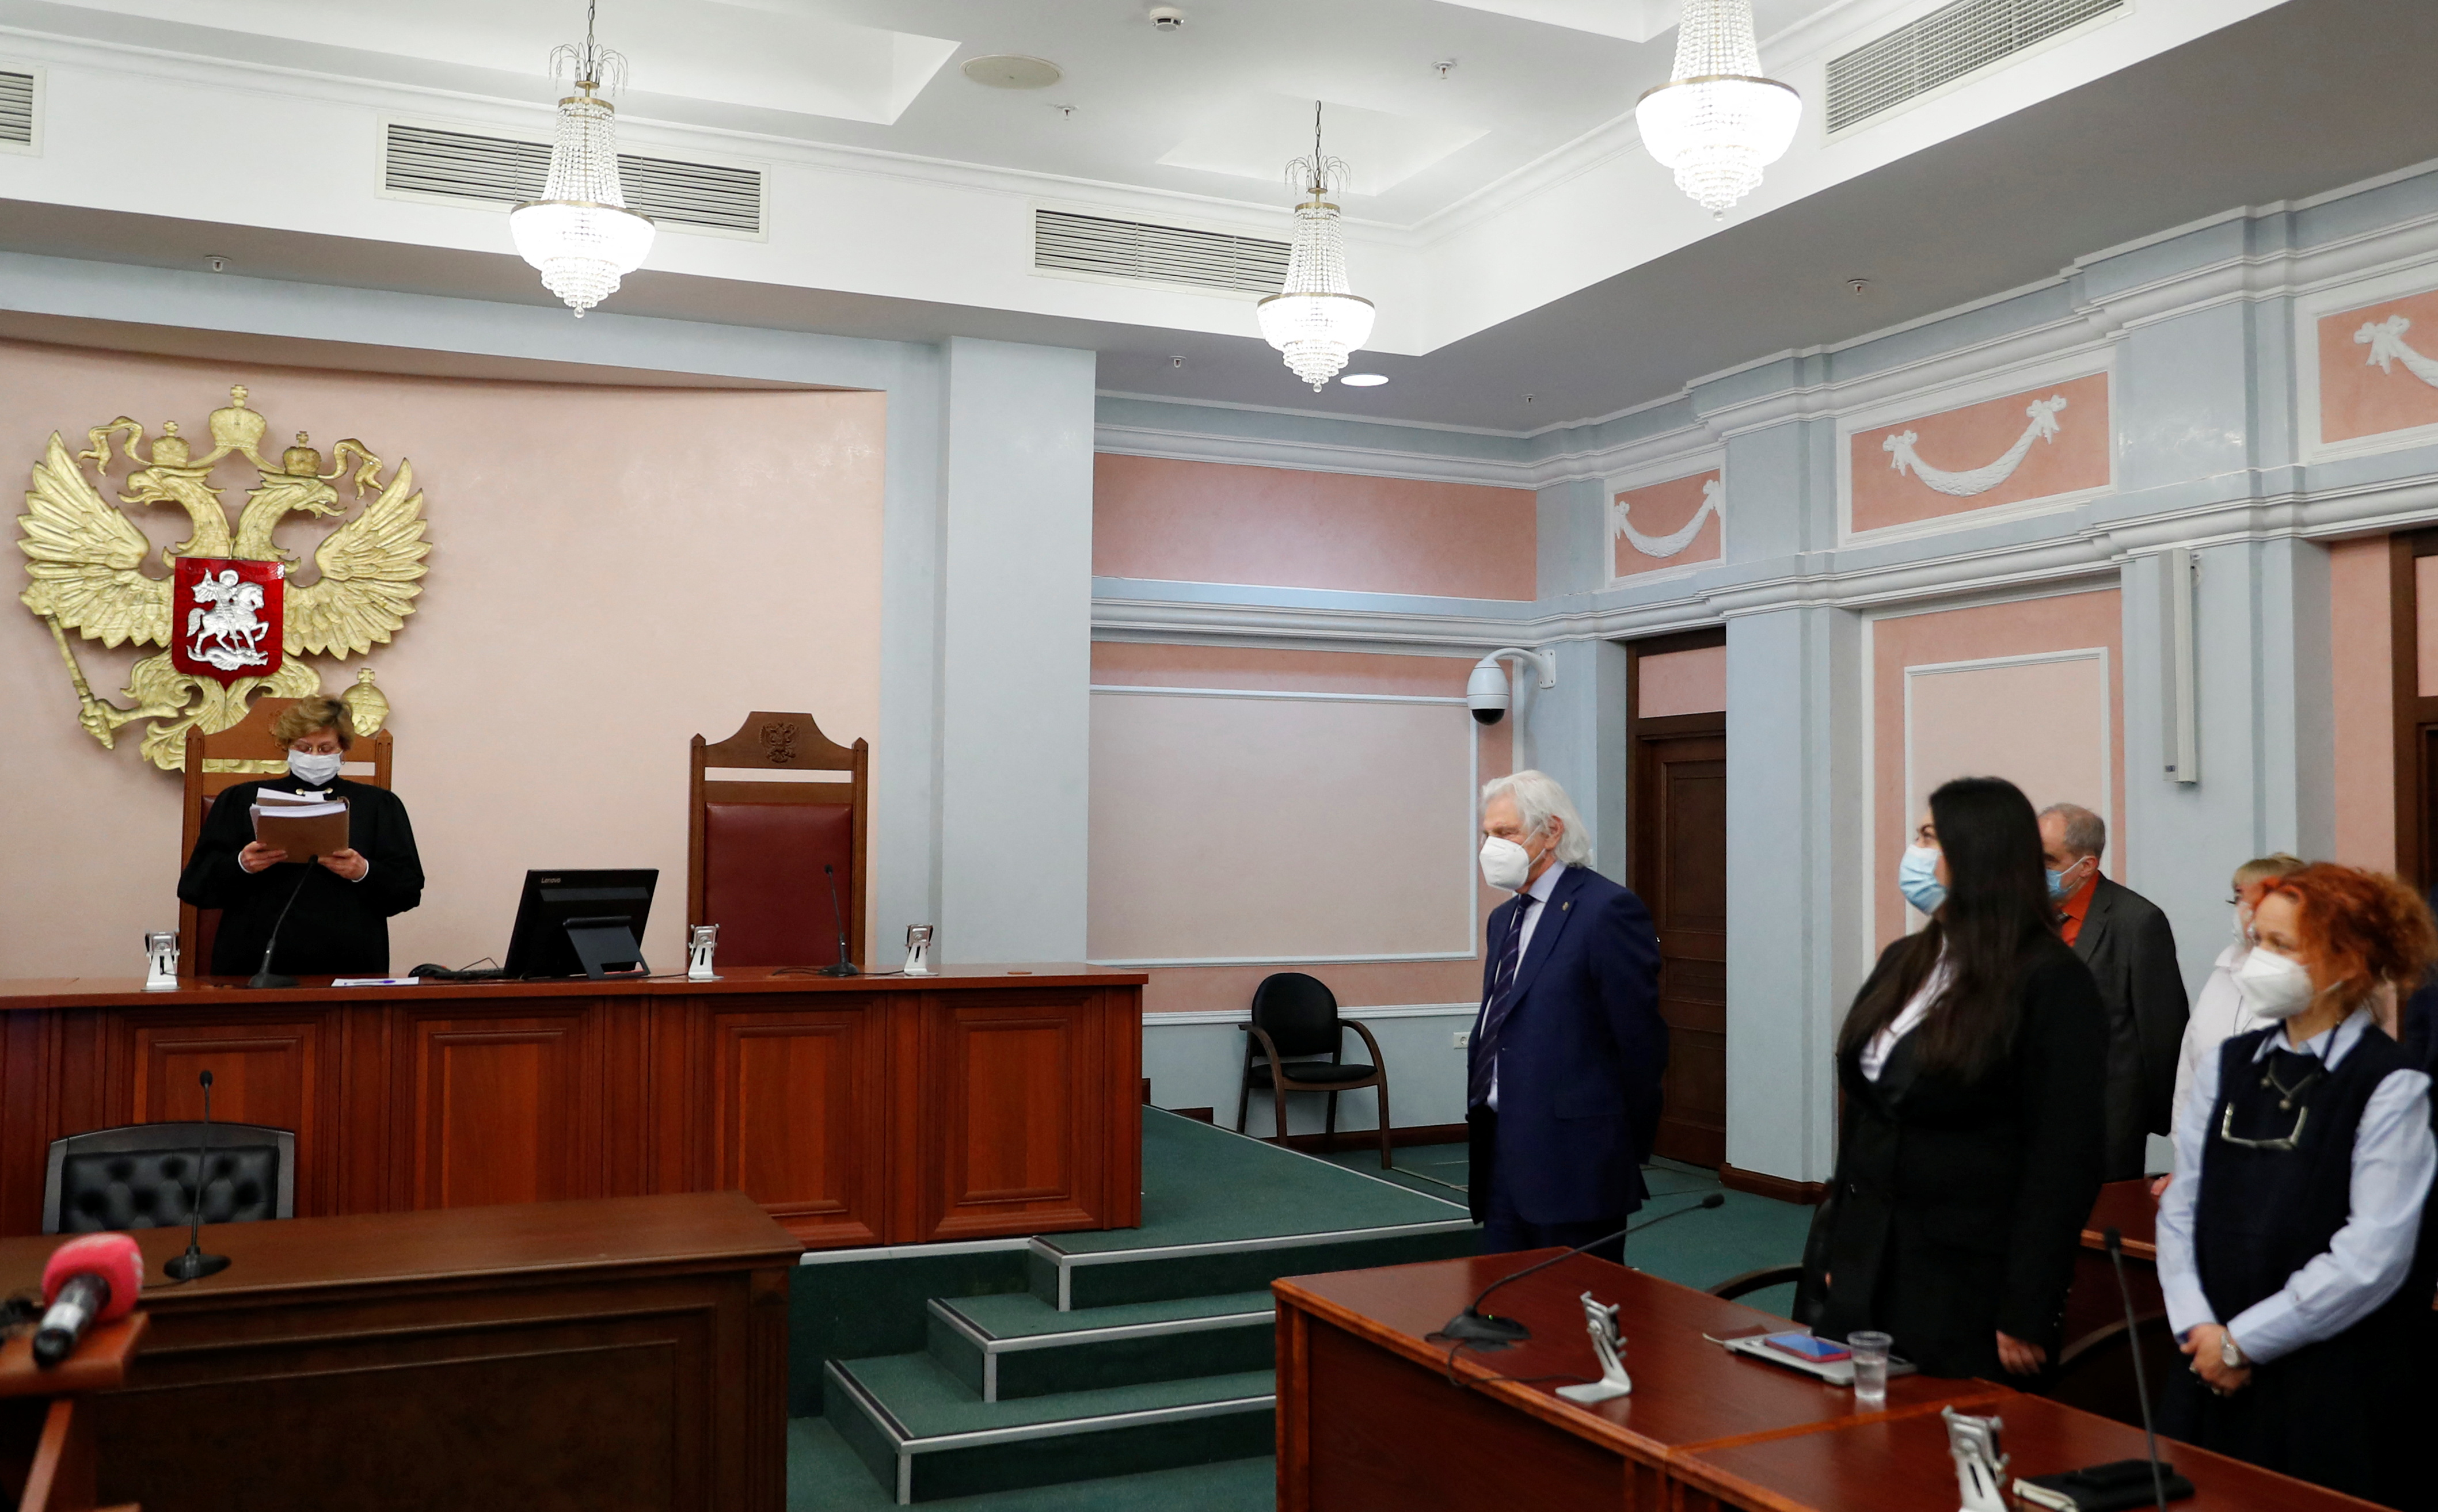 Un juez de la Corte Suprema de Rusia pronuncia el veredicto durante una audiencia para considerar el cierre del grupo de derechos humanos International Memorial en Moscú, Rusia, el 28 de diciembre de 2021. REUTERS/Evgenia Novozhenina